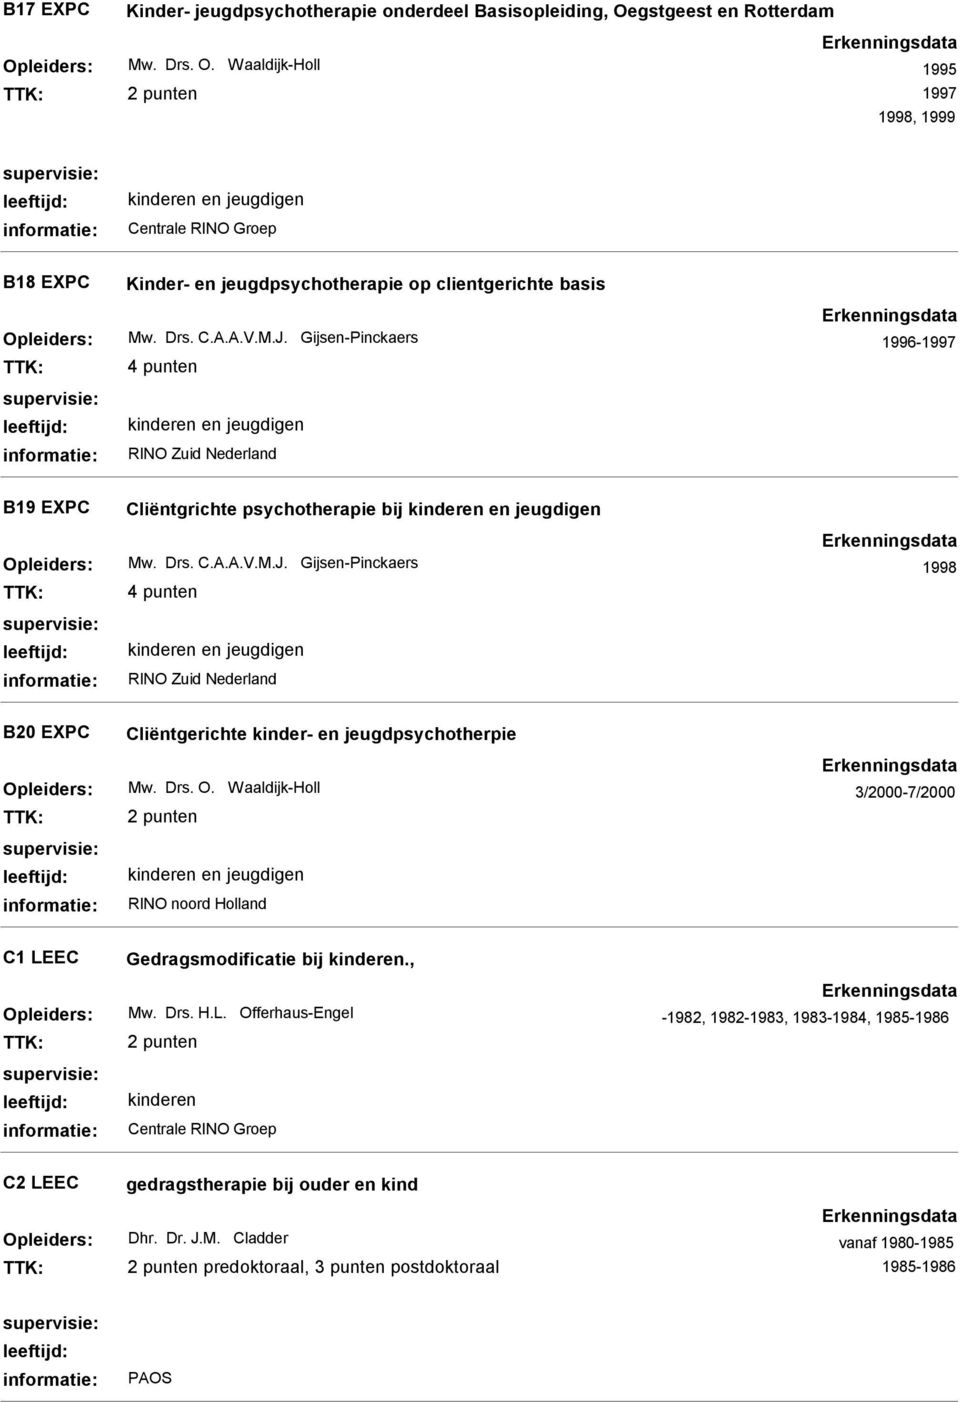 Drs. O. Waaldijk-Holl 3/2000-7/2000 C1 LEEC Gedragsmodificatie bij., Mw. Drs. H.L. Offerhaus-Engel 1981-1982, 1982-1983, 1983-1984, 1985-1986 C2 LEEC gedragstherapie bij ouder en kind Dhr.